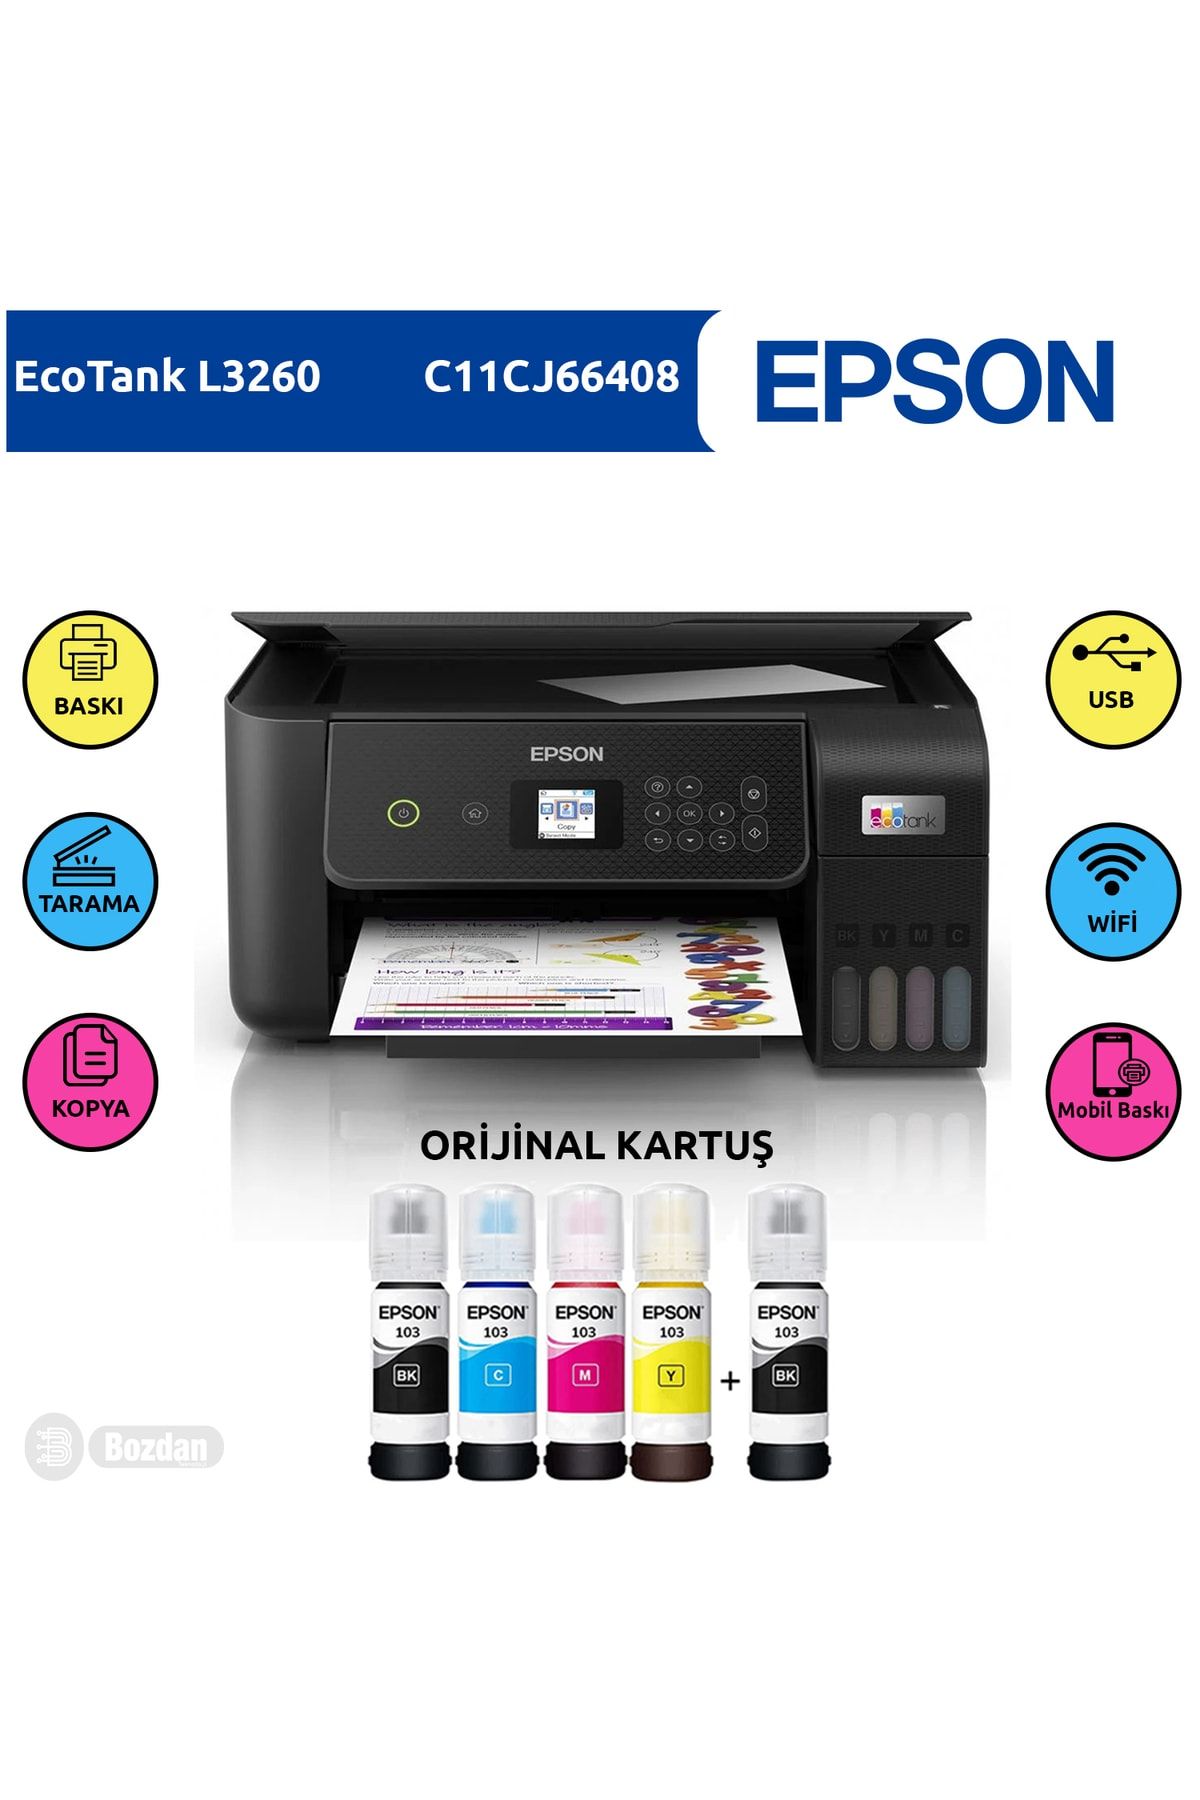 Epson Ecotankl3260 Renkli Tanklı Yazıcı Baskı-tarama-kopya(usb,wifi)+orijinal 4x65ml+1 Mürekkep